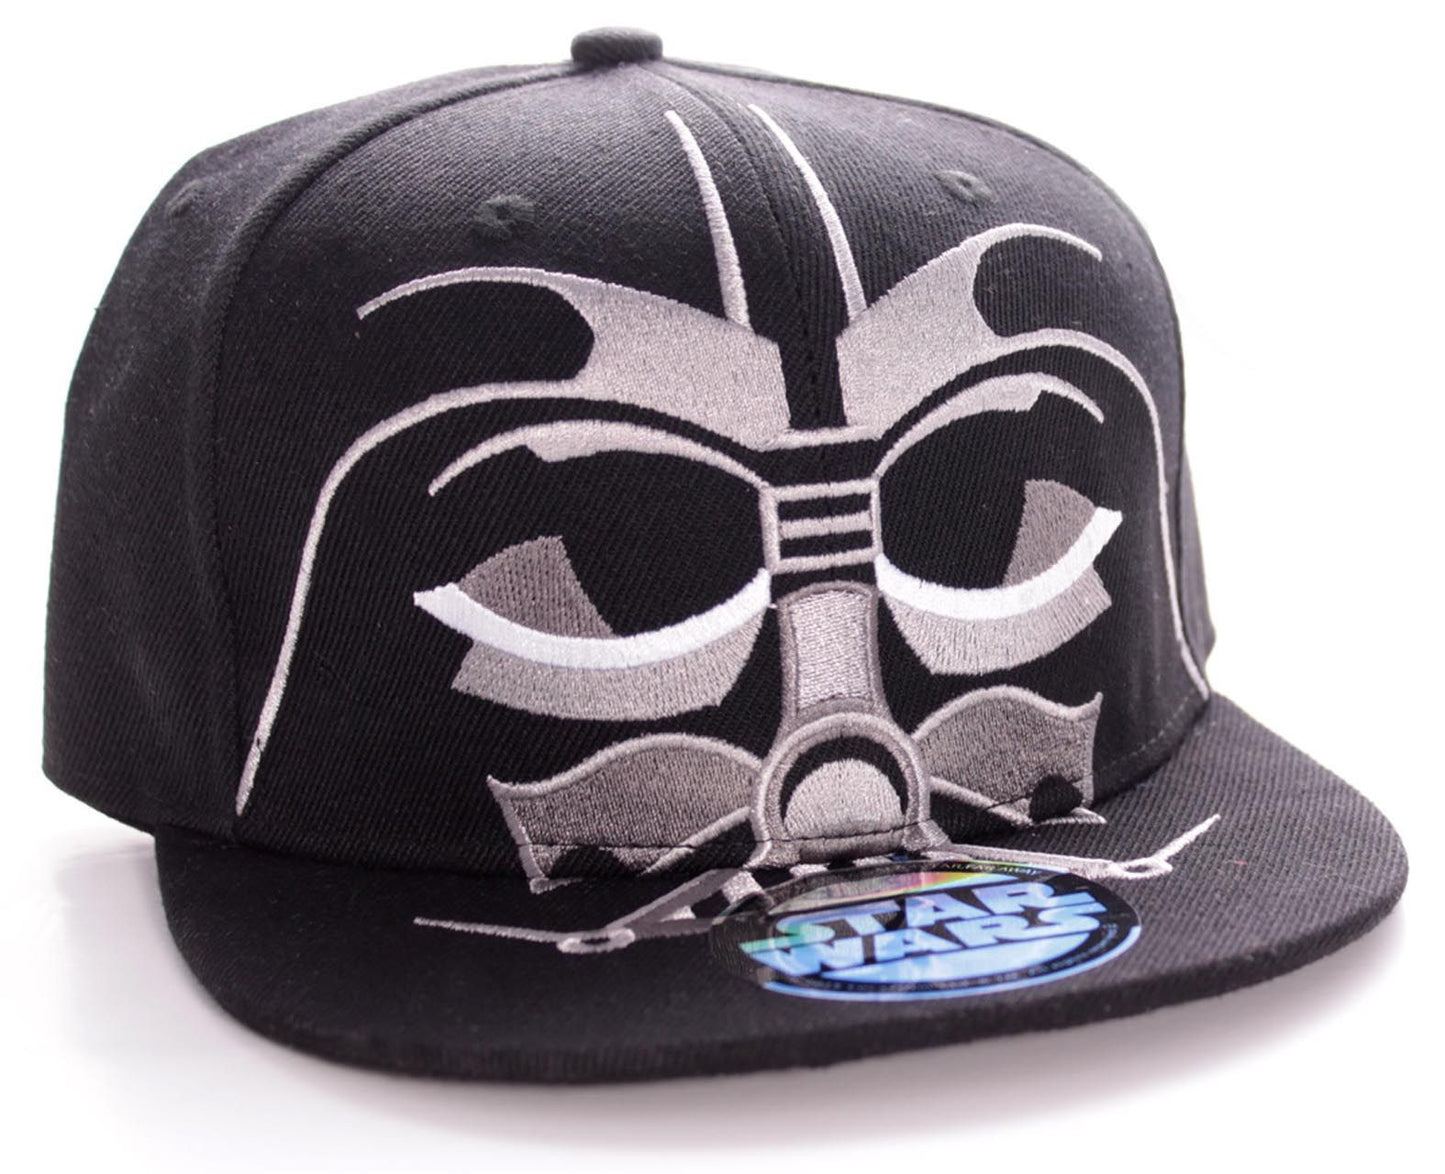 Star Wars Cap - Vader's Helmet